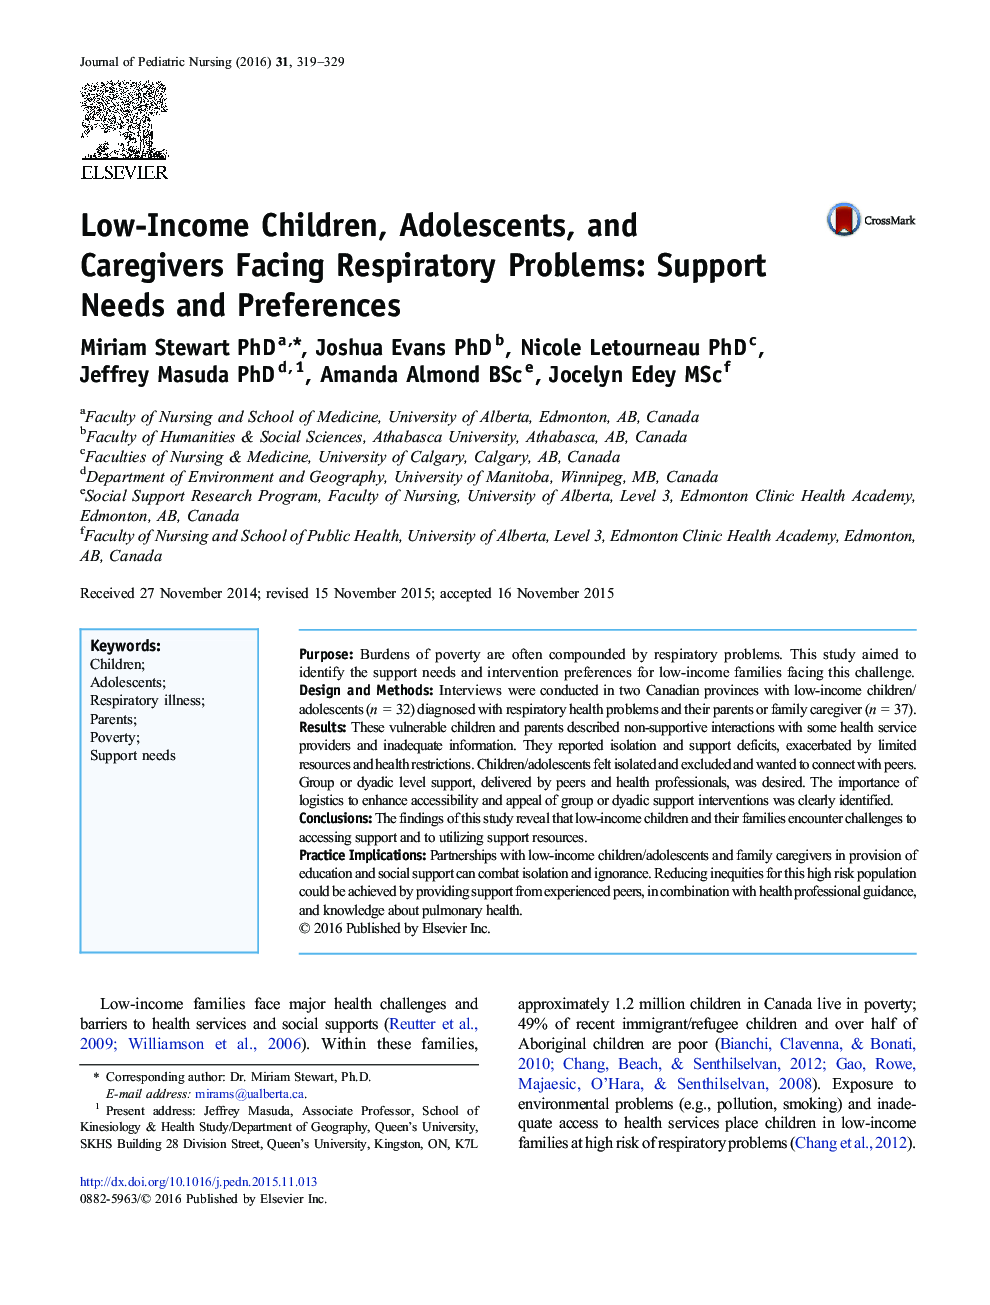 کودکان، نوجوانان و مراقبای با درآمد پایین با مشکل تنفسی: نیازمندی ها و ترجیحات حمایت 